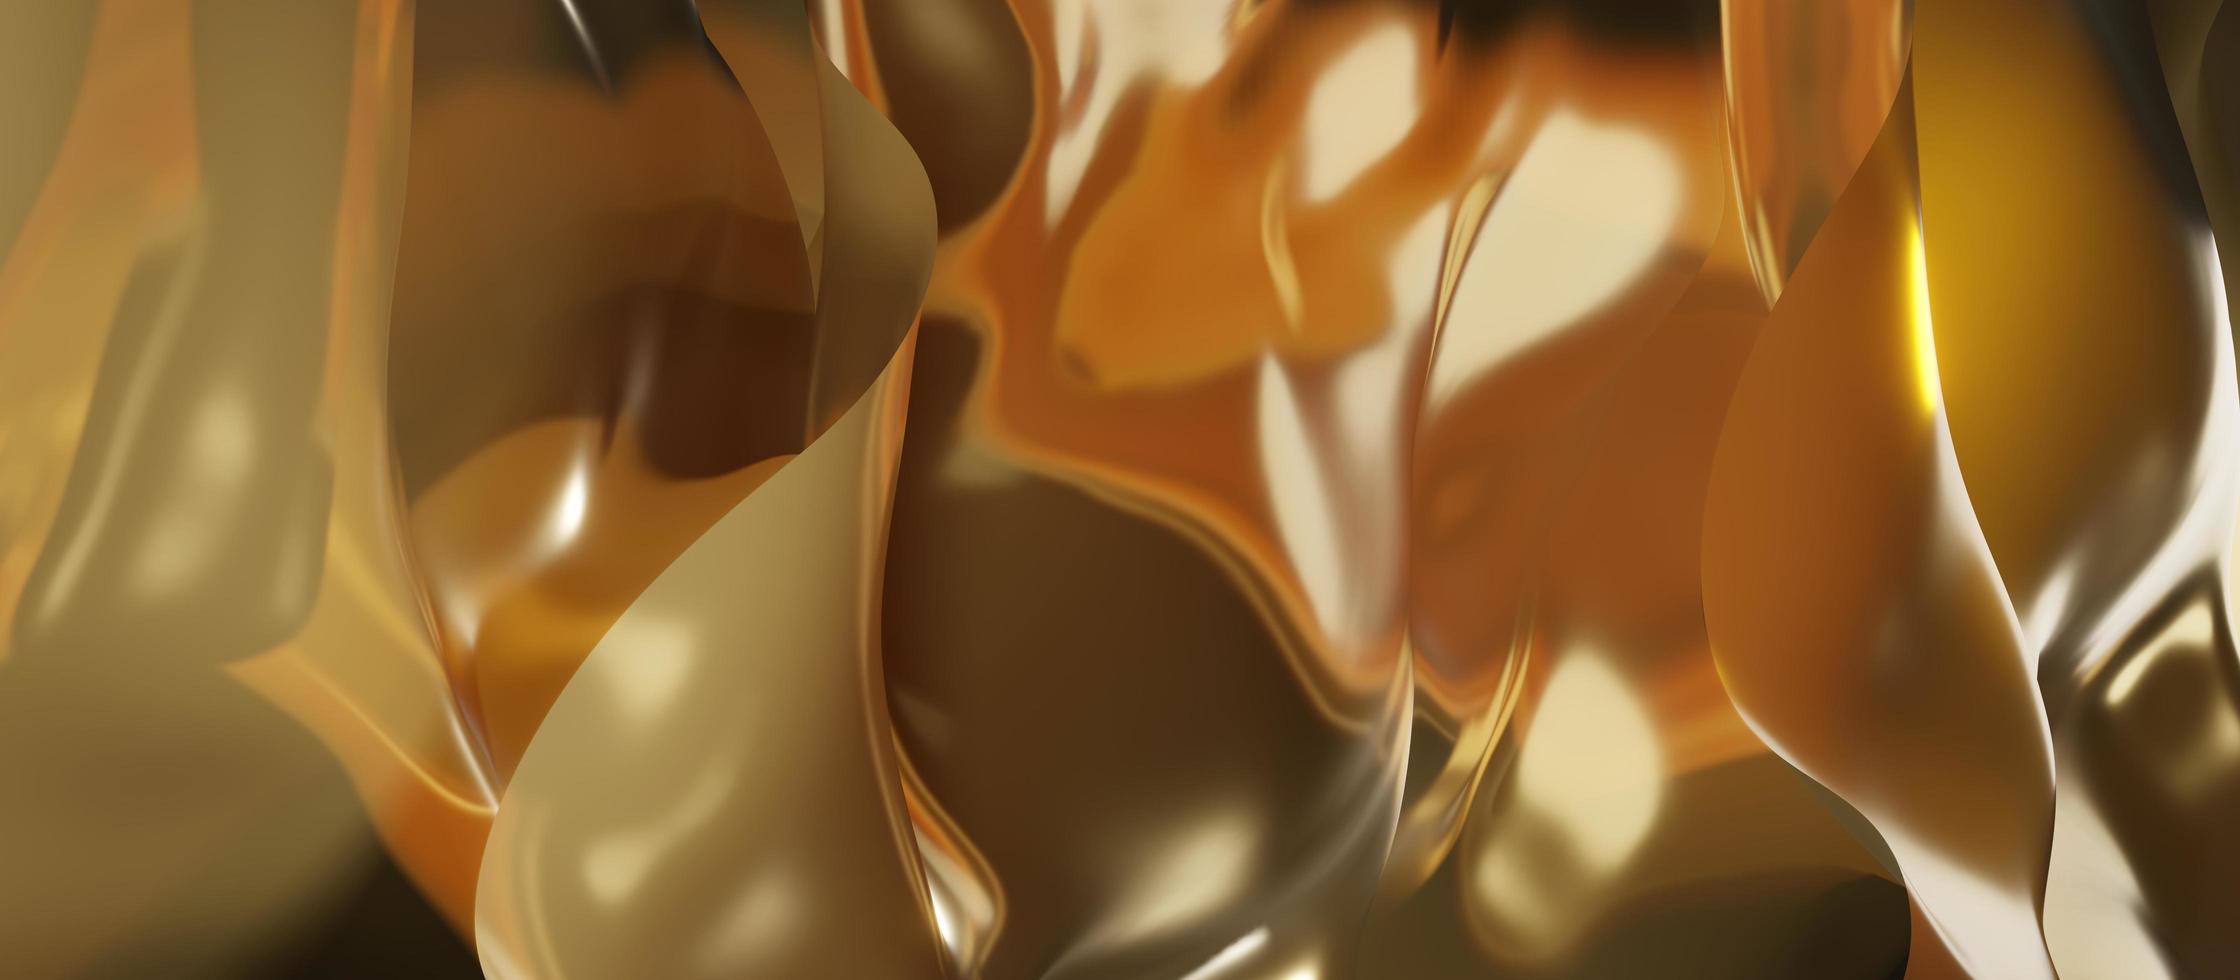 golden wave texture shiny sheet shiny surface luxury background 3D illustration photo